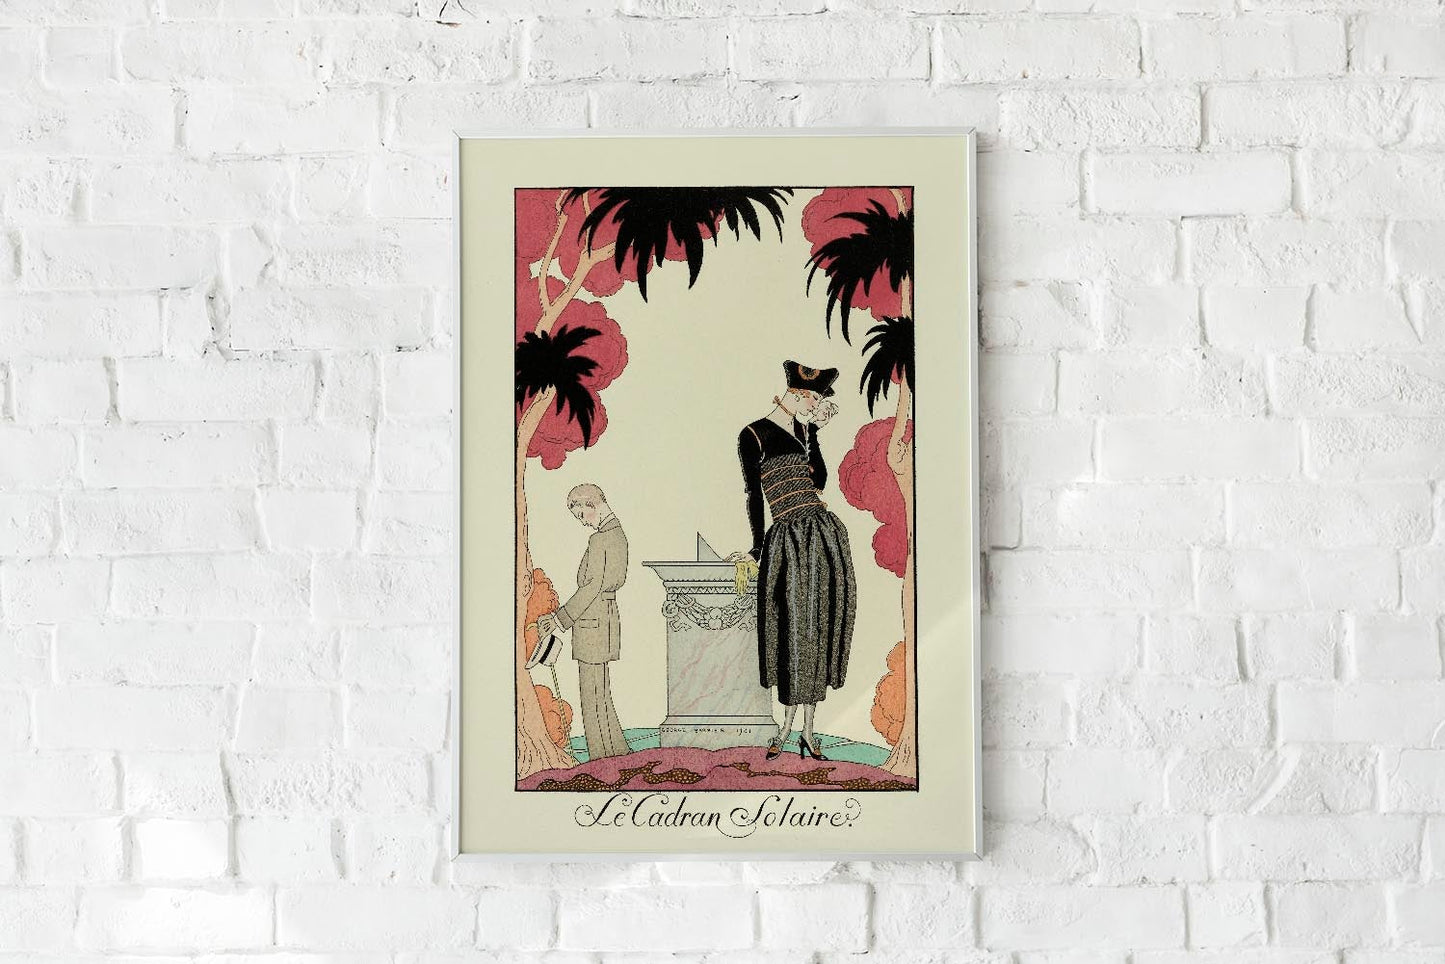 Le Cadran Solaire Vintage Poster